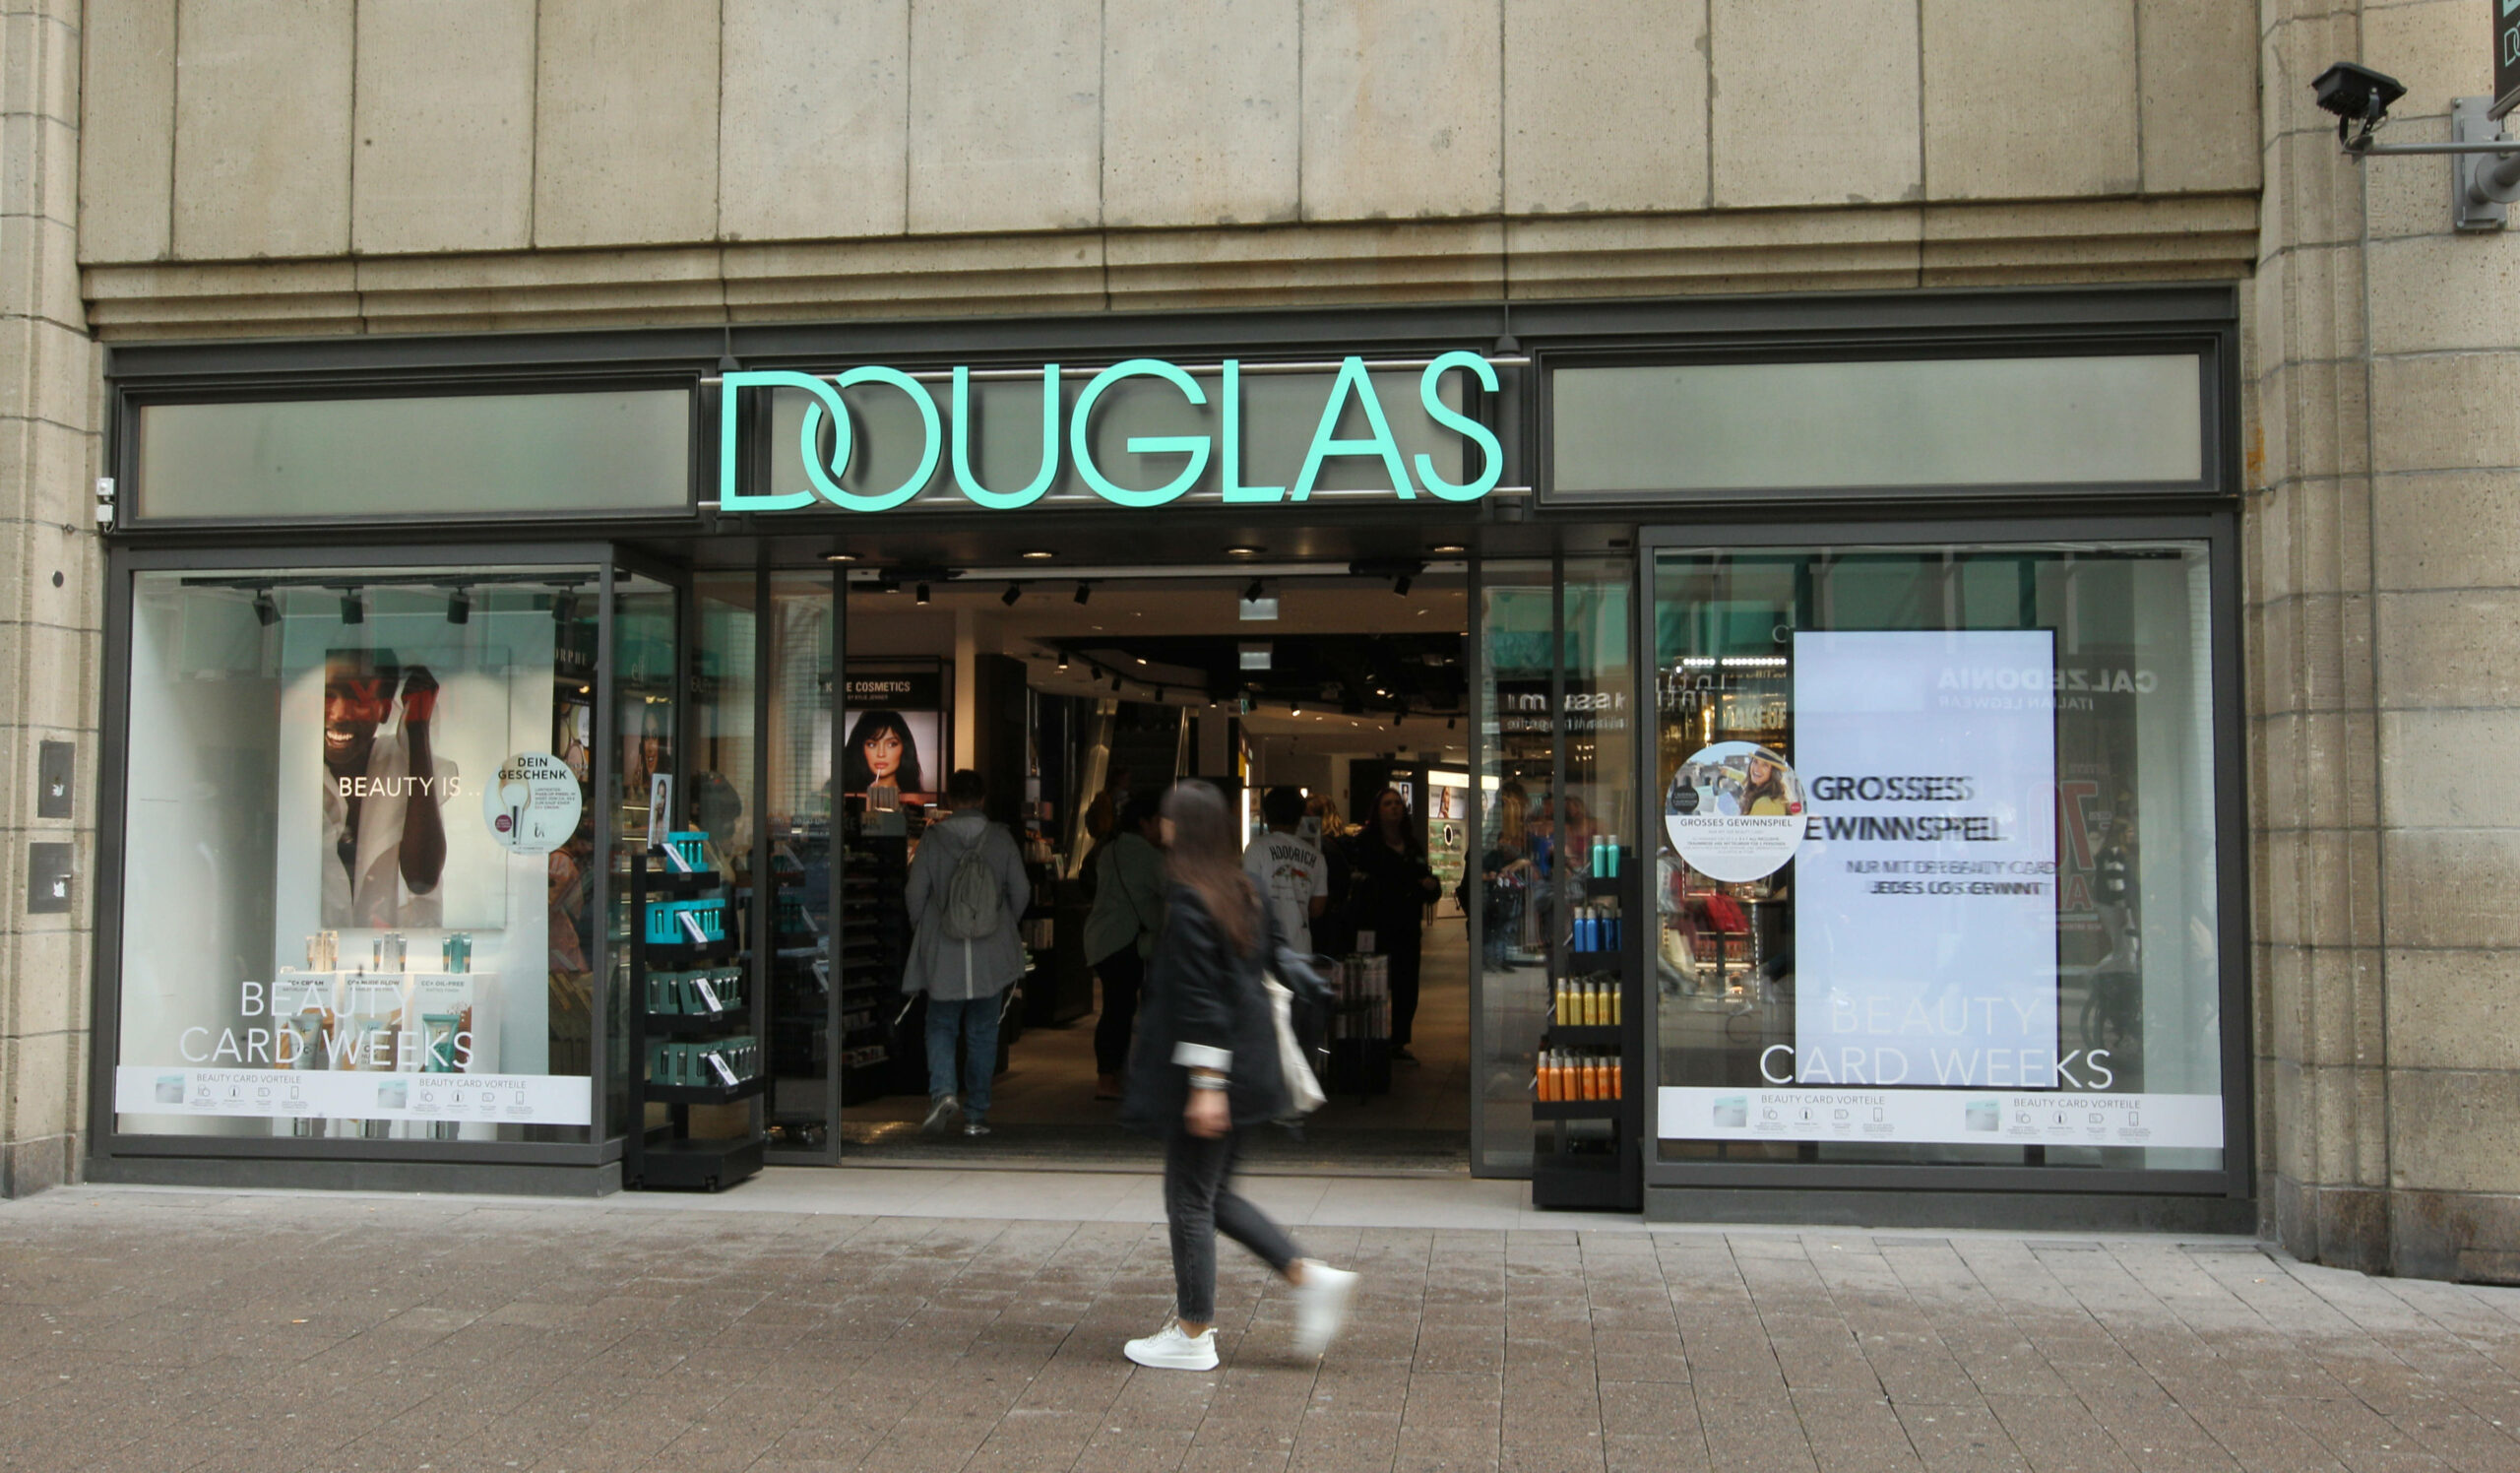 Am Montag wird im Einzelhandel gestreikt. Auch Douglas soll betroffen sein. (Archivbild)